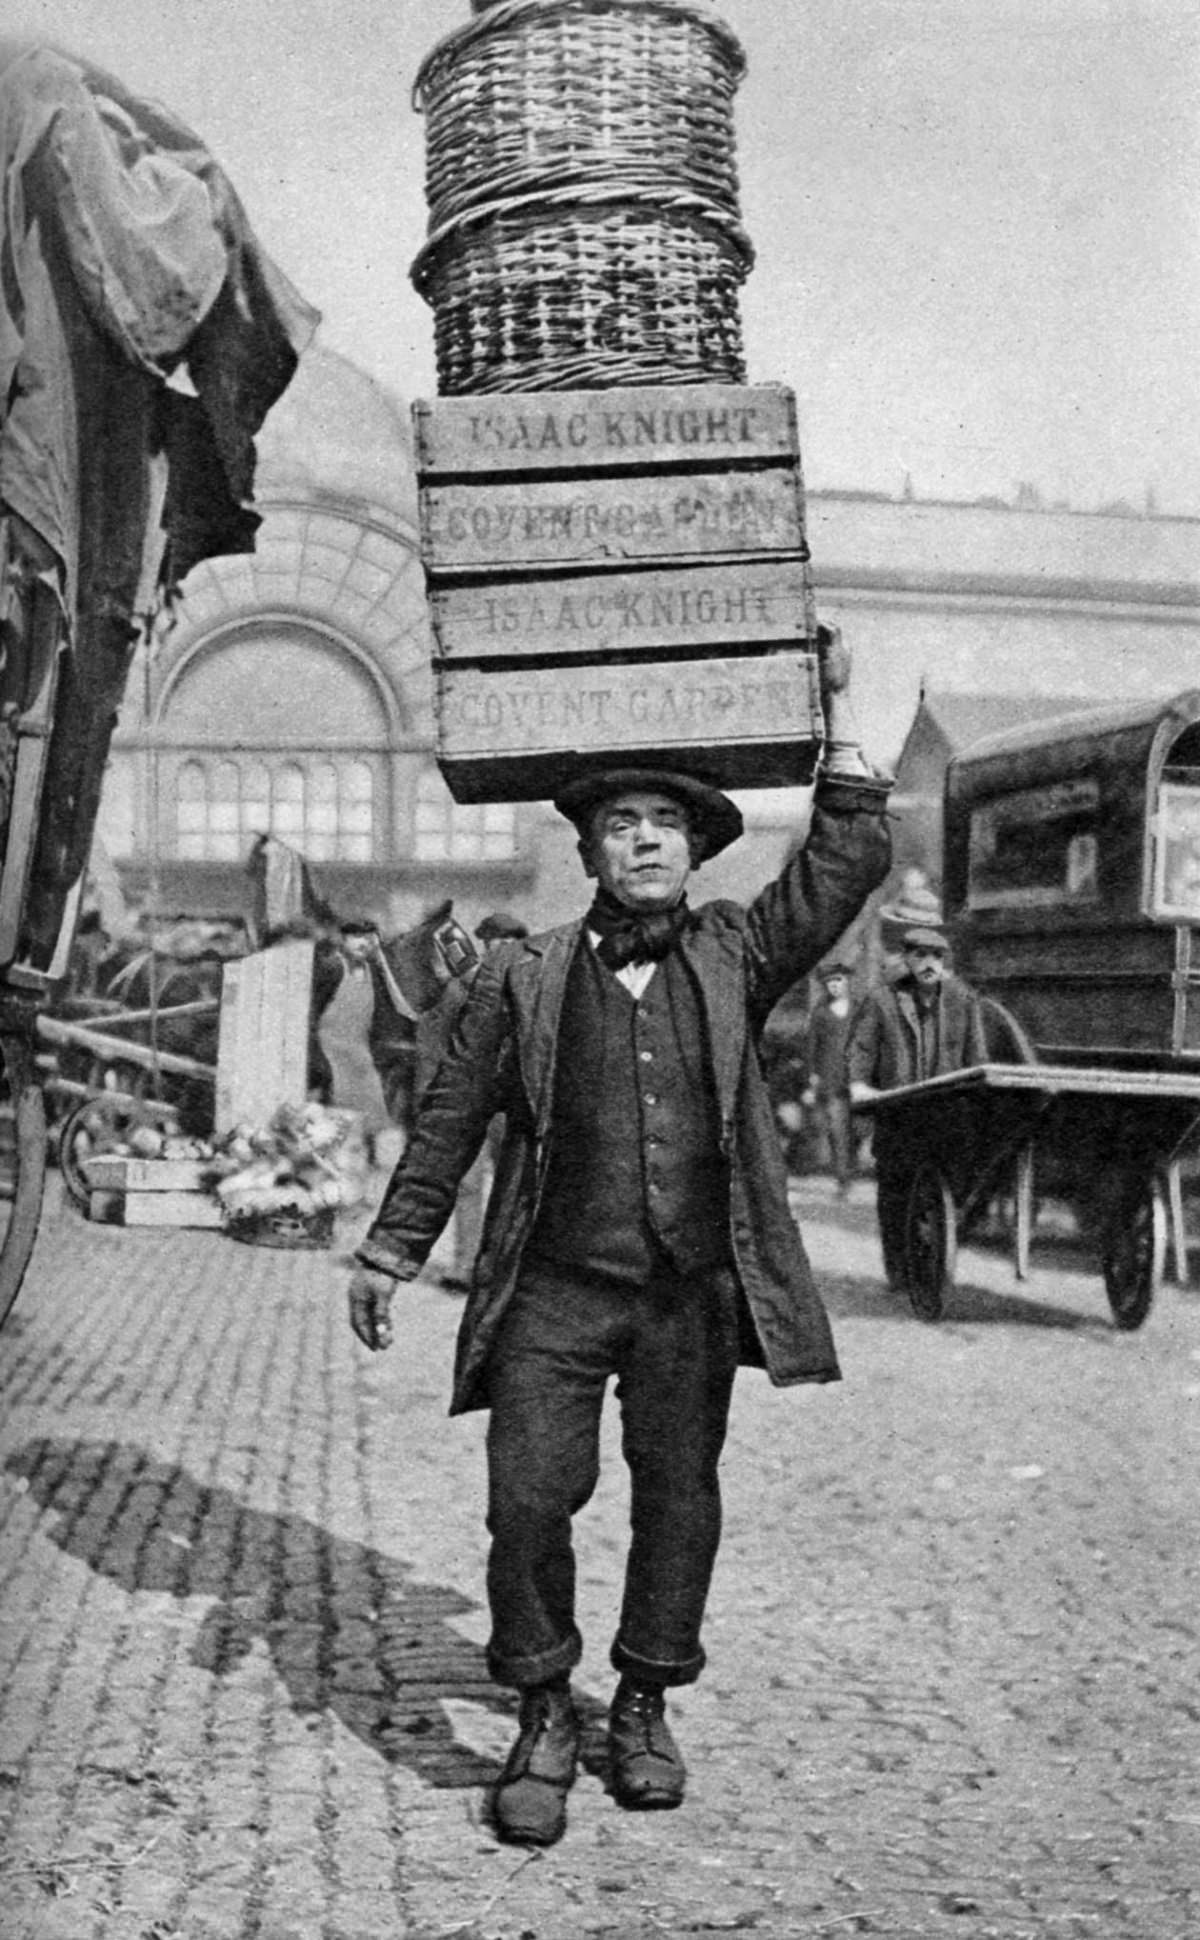 A Covent Garden market porter, 1922.